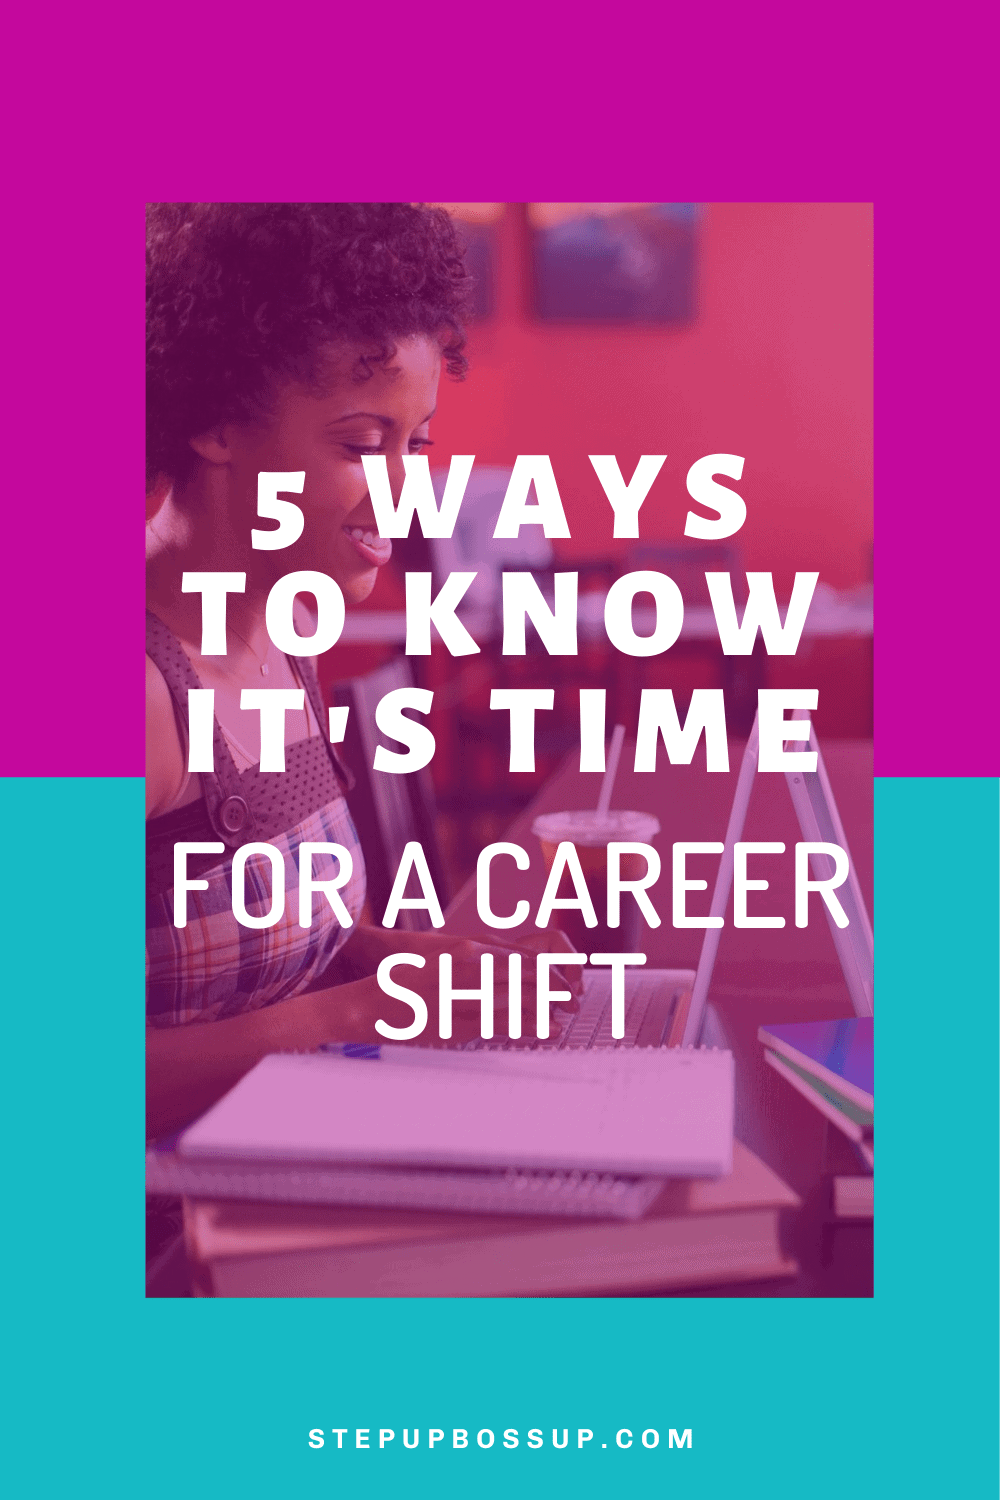 Career Shift